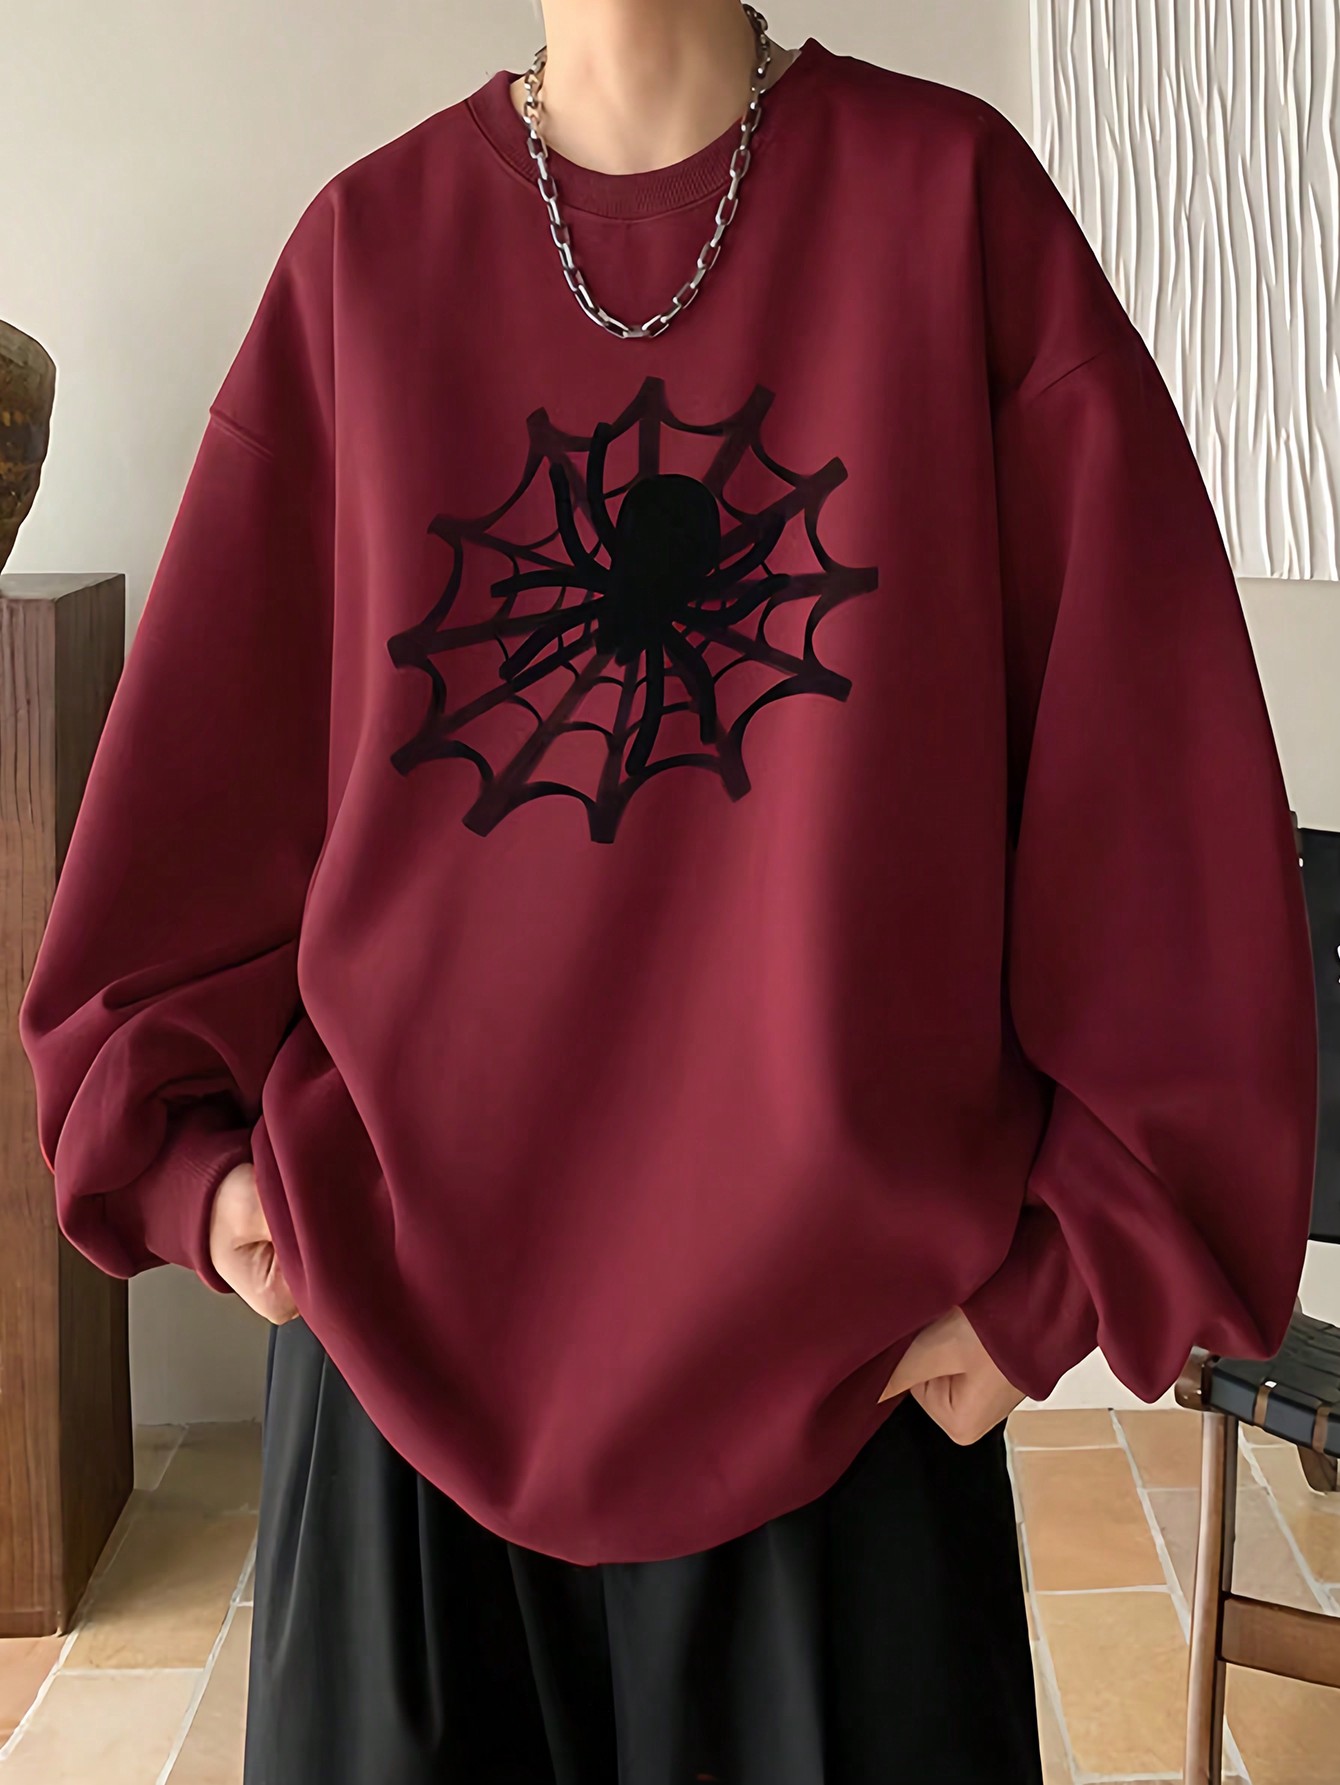 Manfinity EMRG Мужской пуловер свободного кроя с принтом паутины и заниженными плечами, бургундия